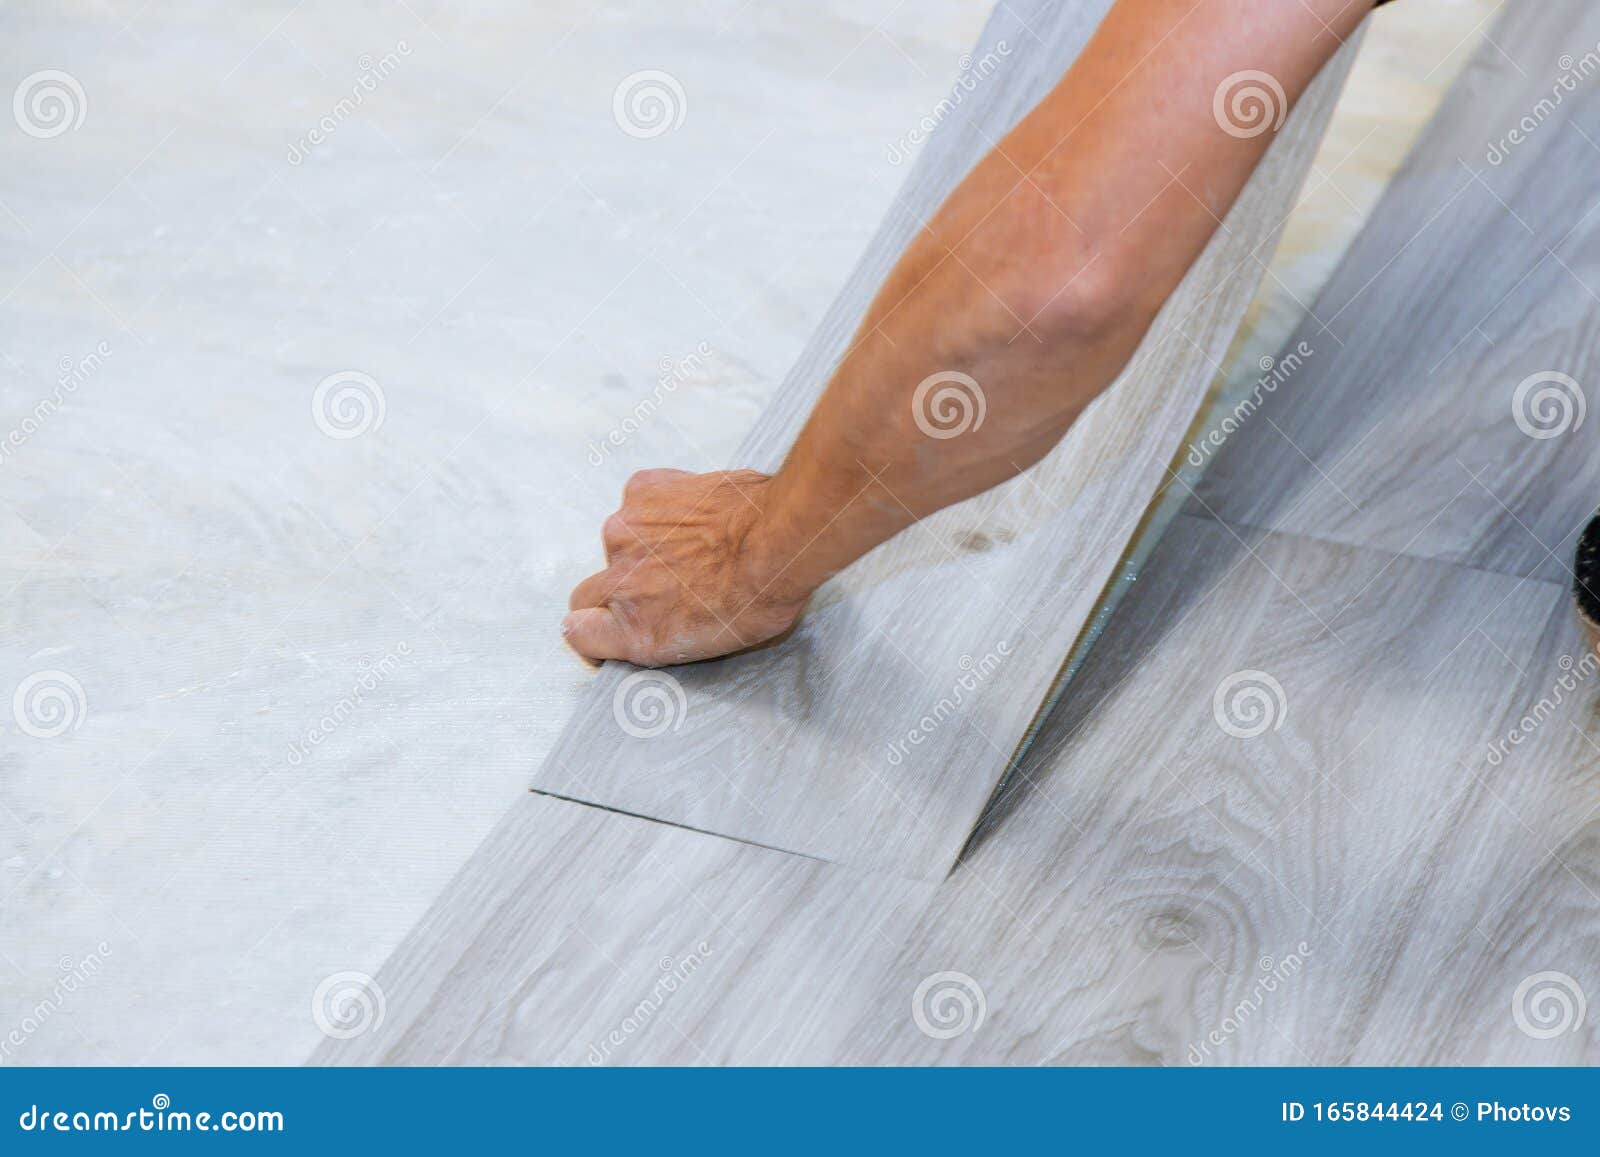 Worker Installing New Vinyl Tile Floor Laminate Wood Texture Floor